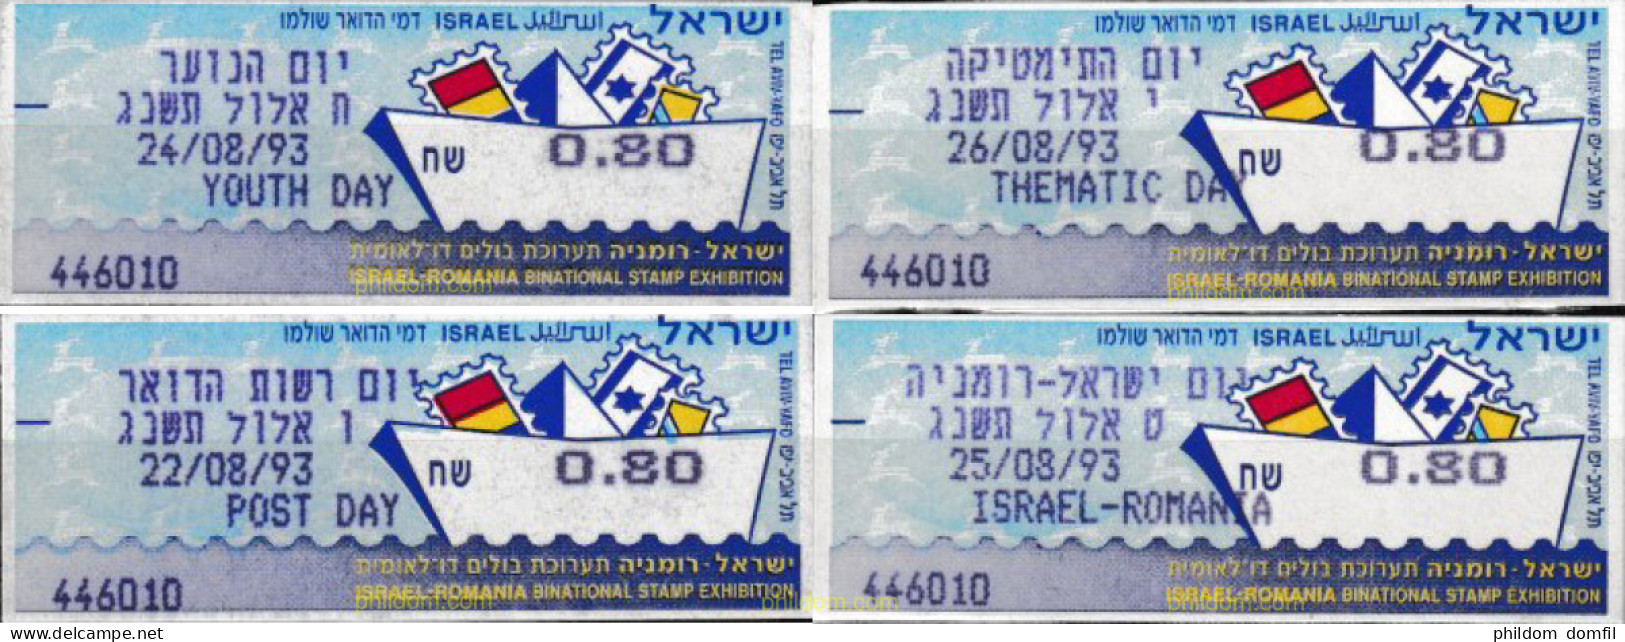 662194 MNH ISRAEL 1993 TELEFILIA 93 - Unused Stamps (without Tabs)